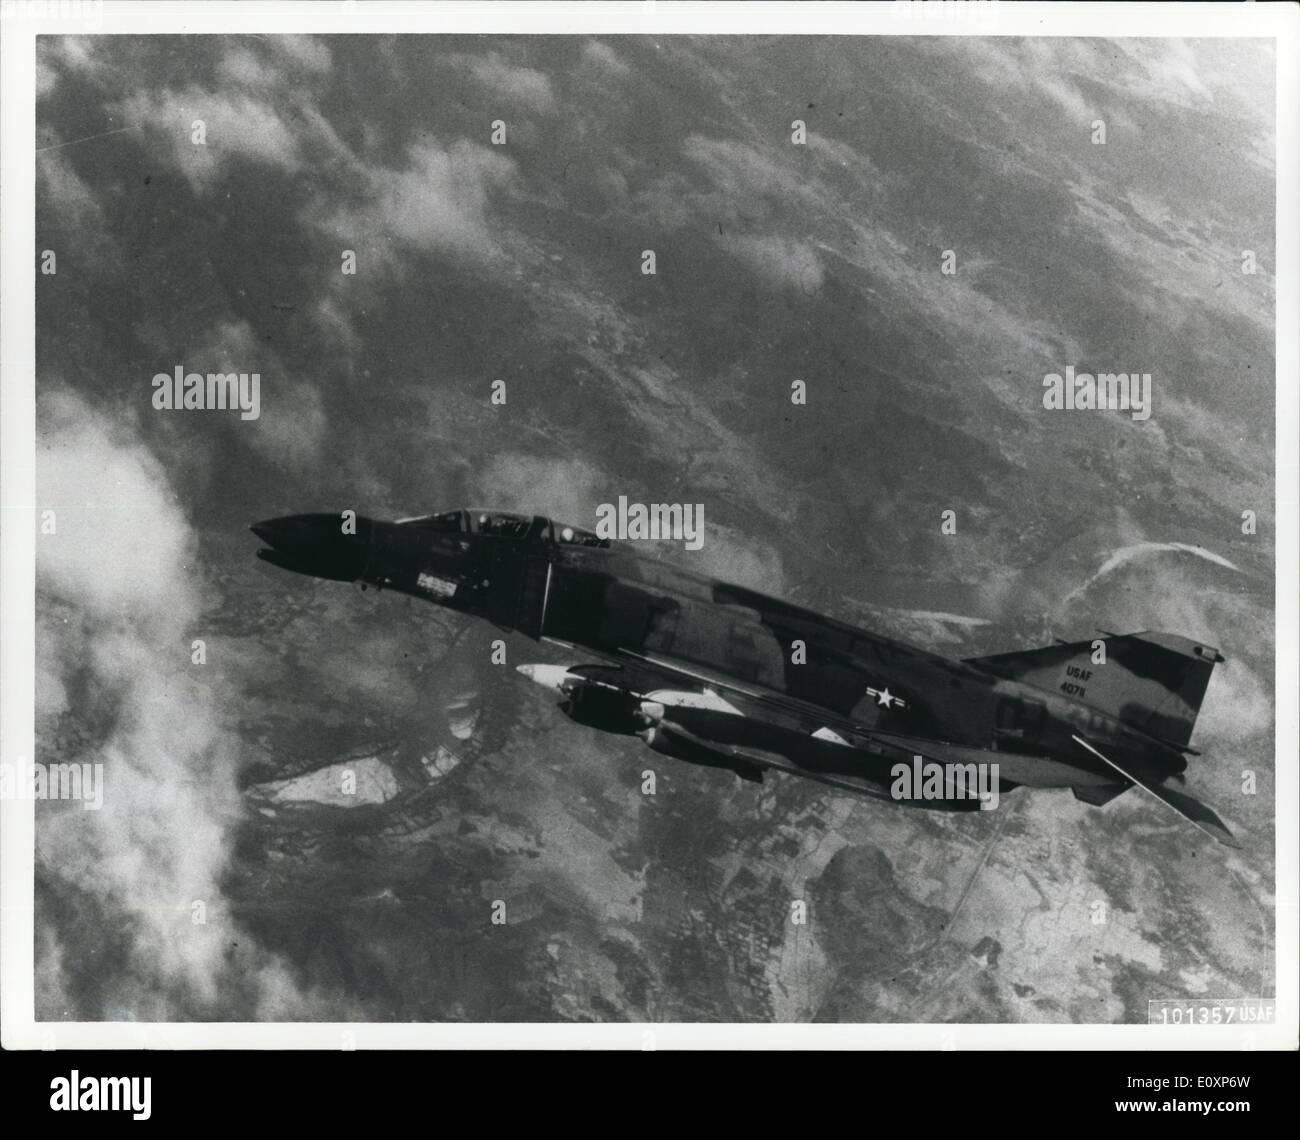 Lug. 07, 1967 - USAF - una U. S. Air Force jet Phantom file in Vietnam. Esso è utilizzato per battere il coperchio difensivo per attacchi aerei su Foto Stock